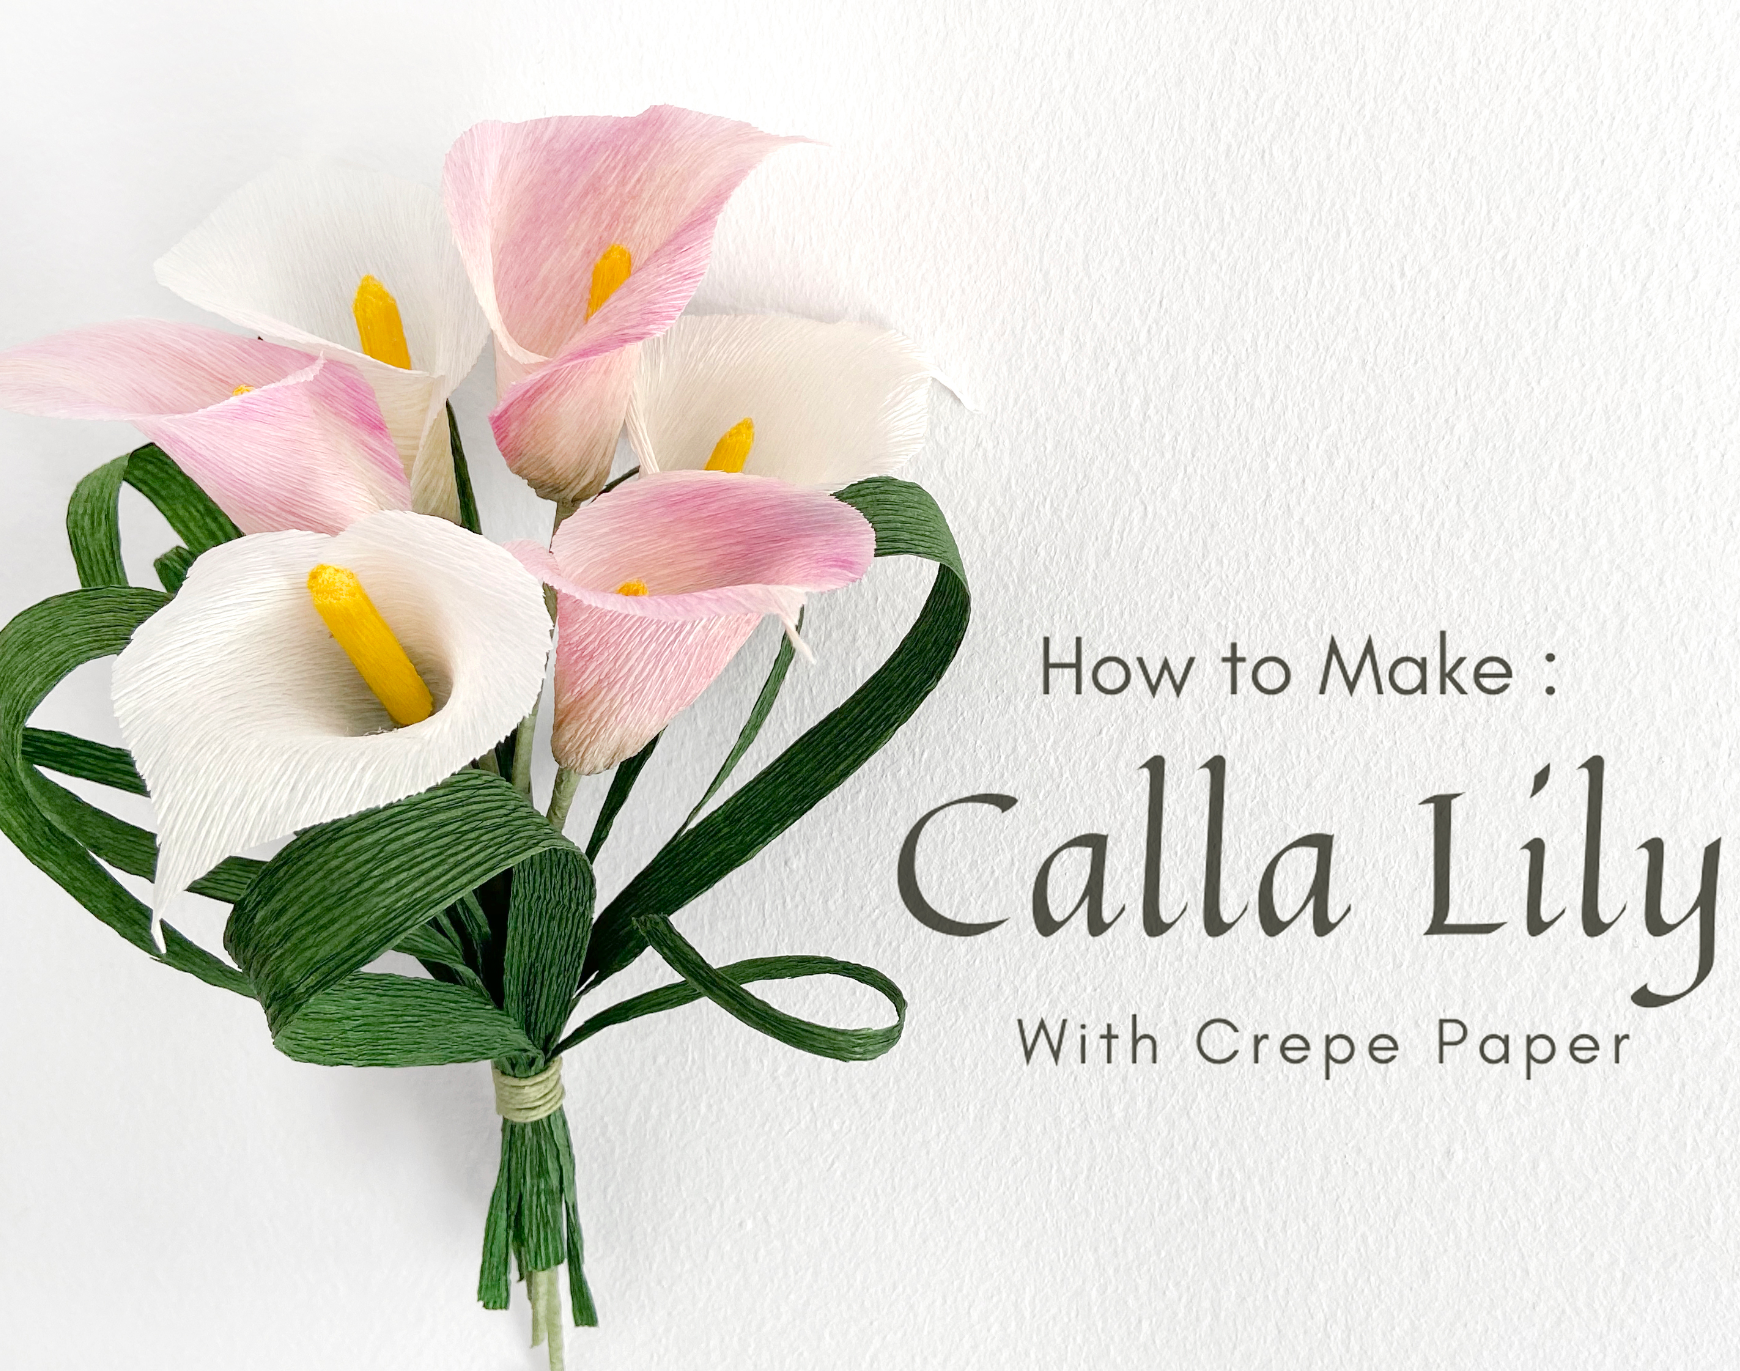 Crepe paper calla lily